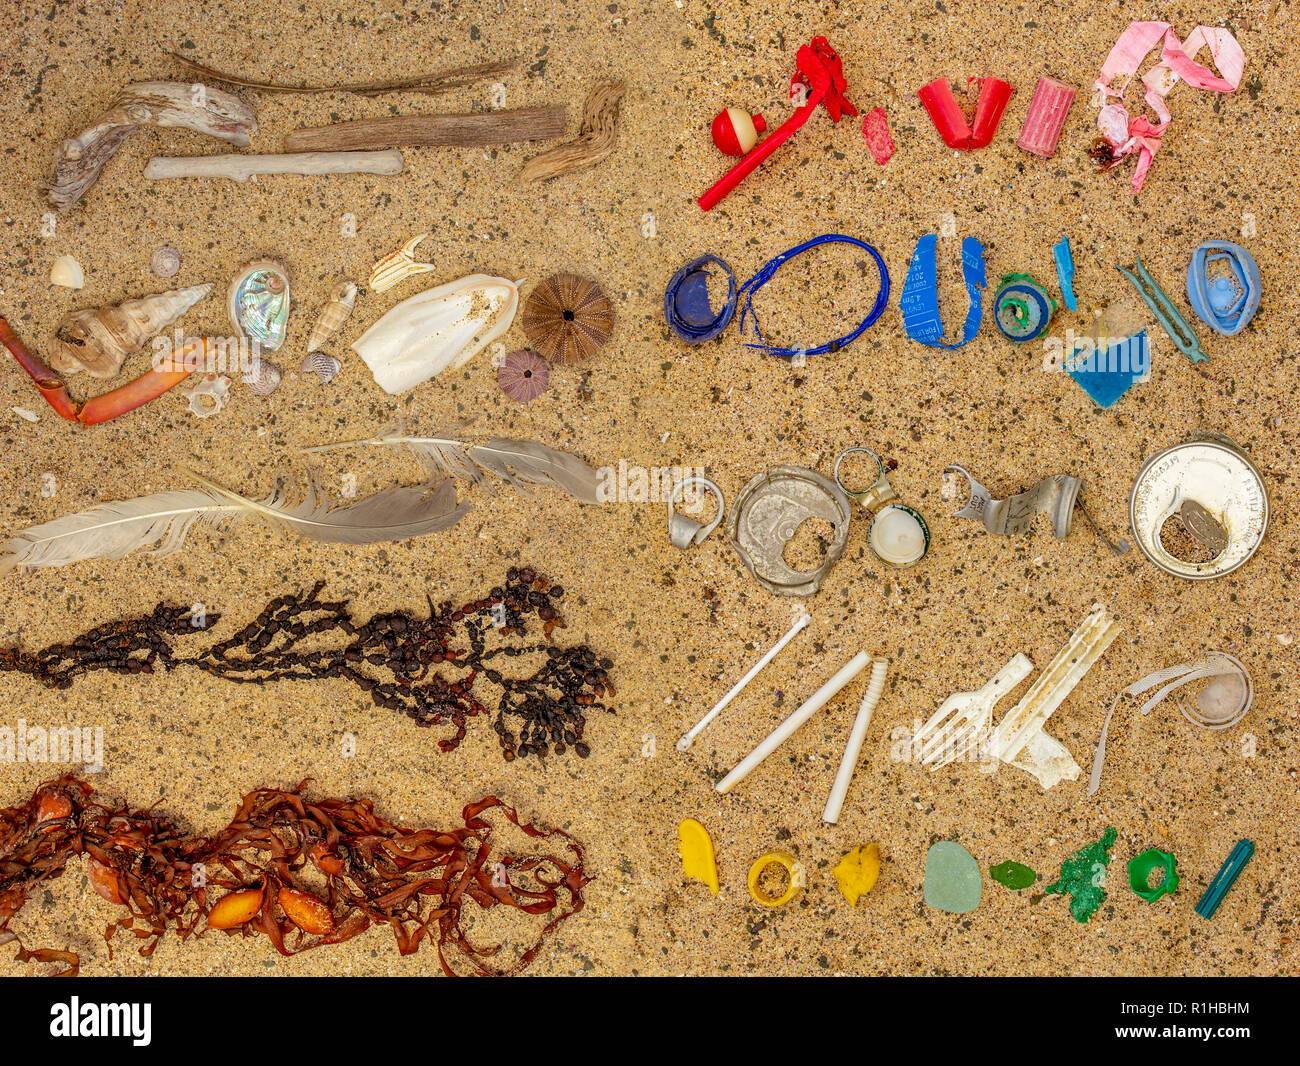 Real, incluyendo la contaminación de plástico de plástico de un solo uso, arrastrados hasta playa separados y ordenados de playa natural restos de algas, conchas y plumas Foto de stock